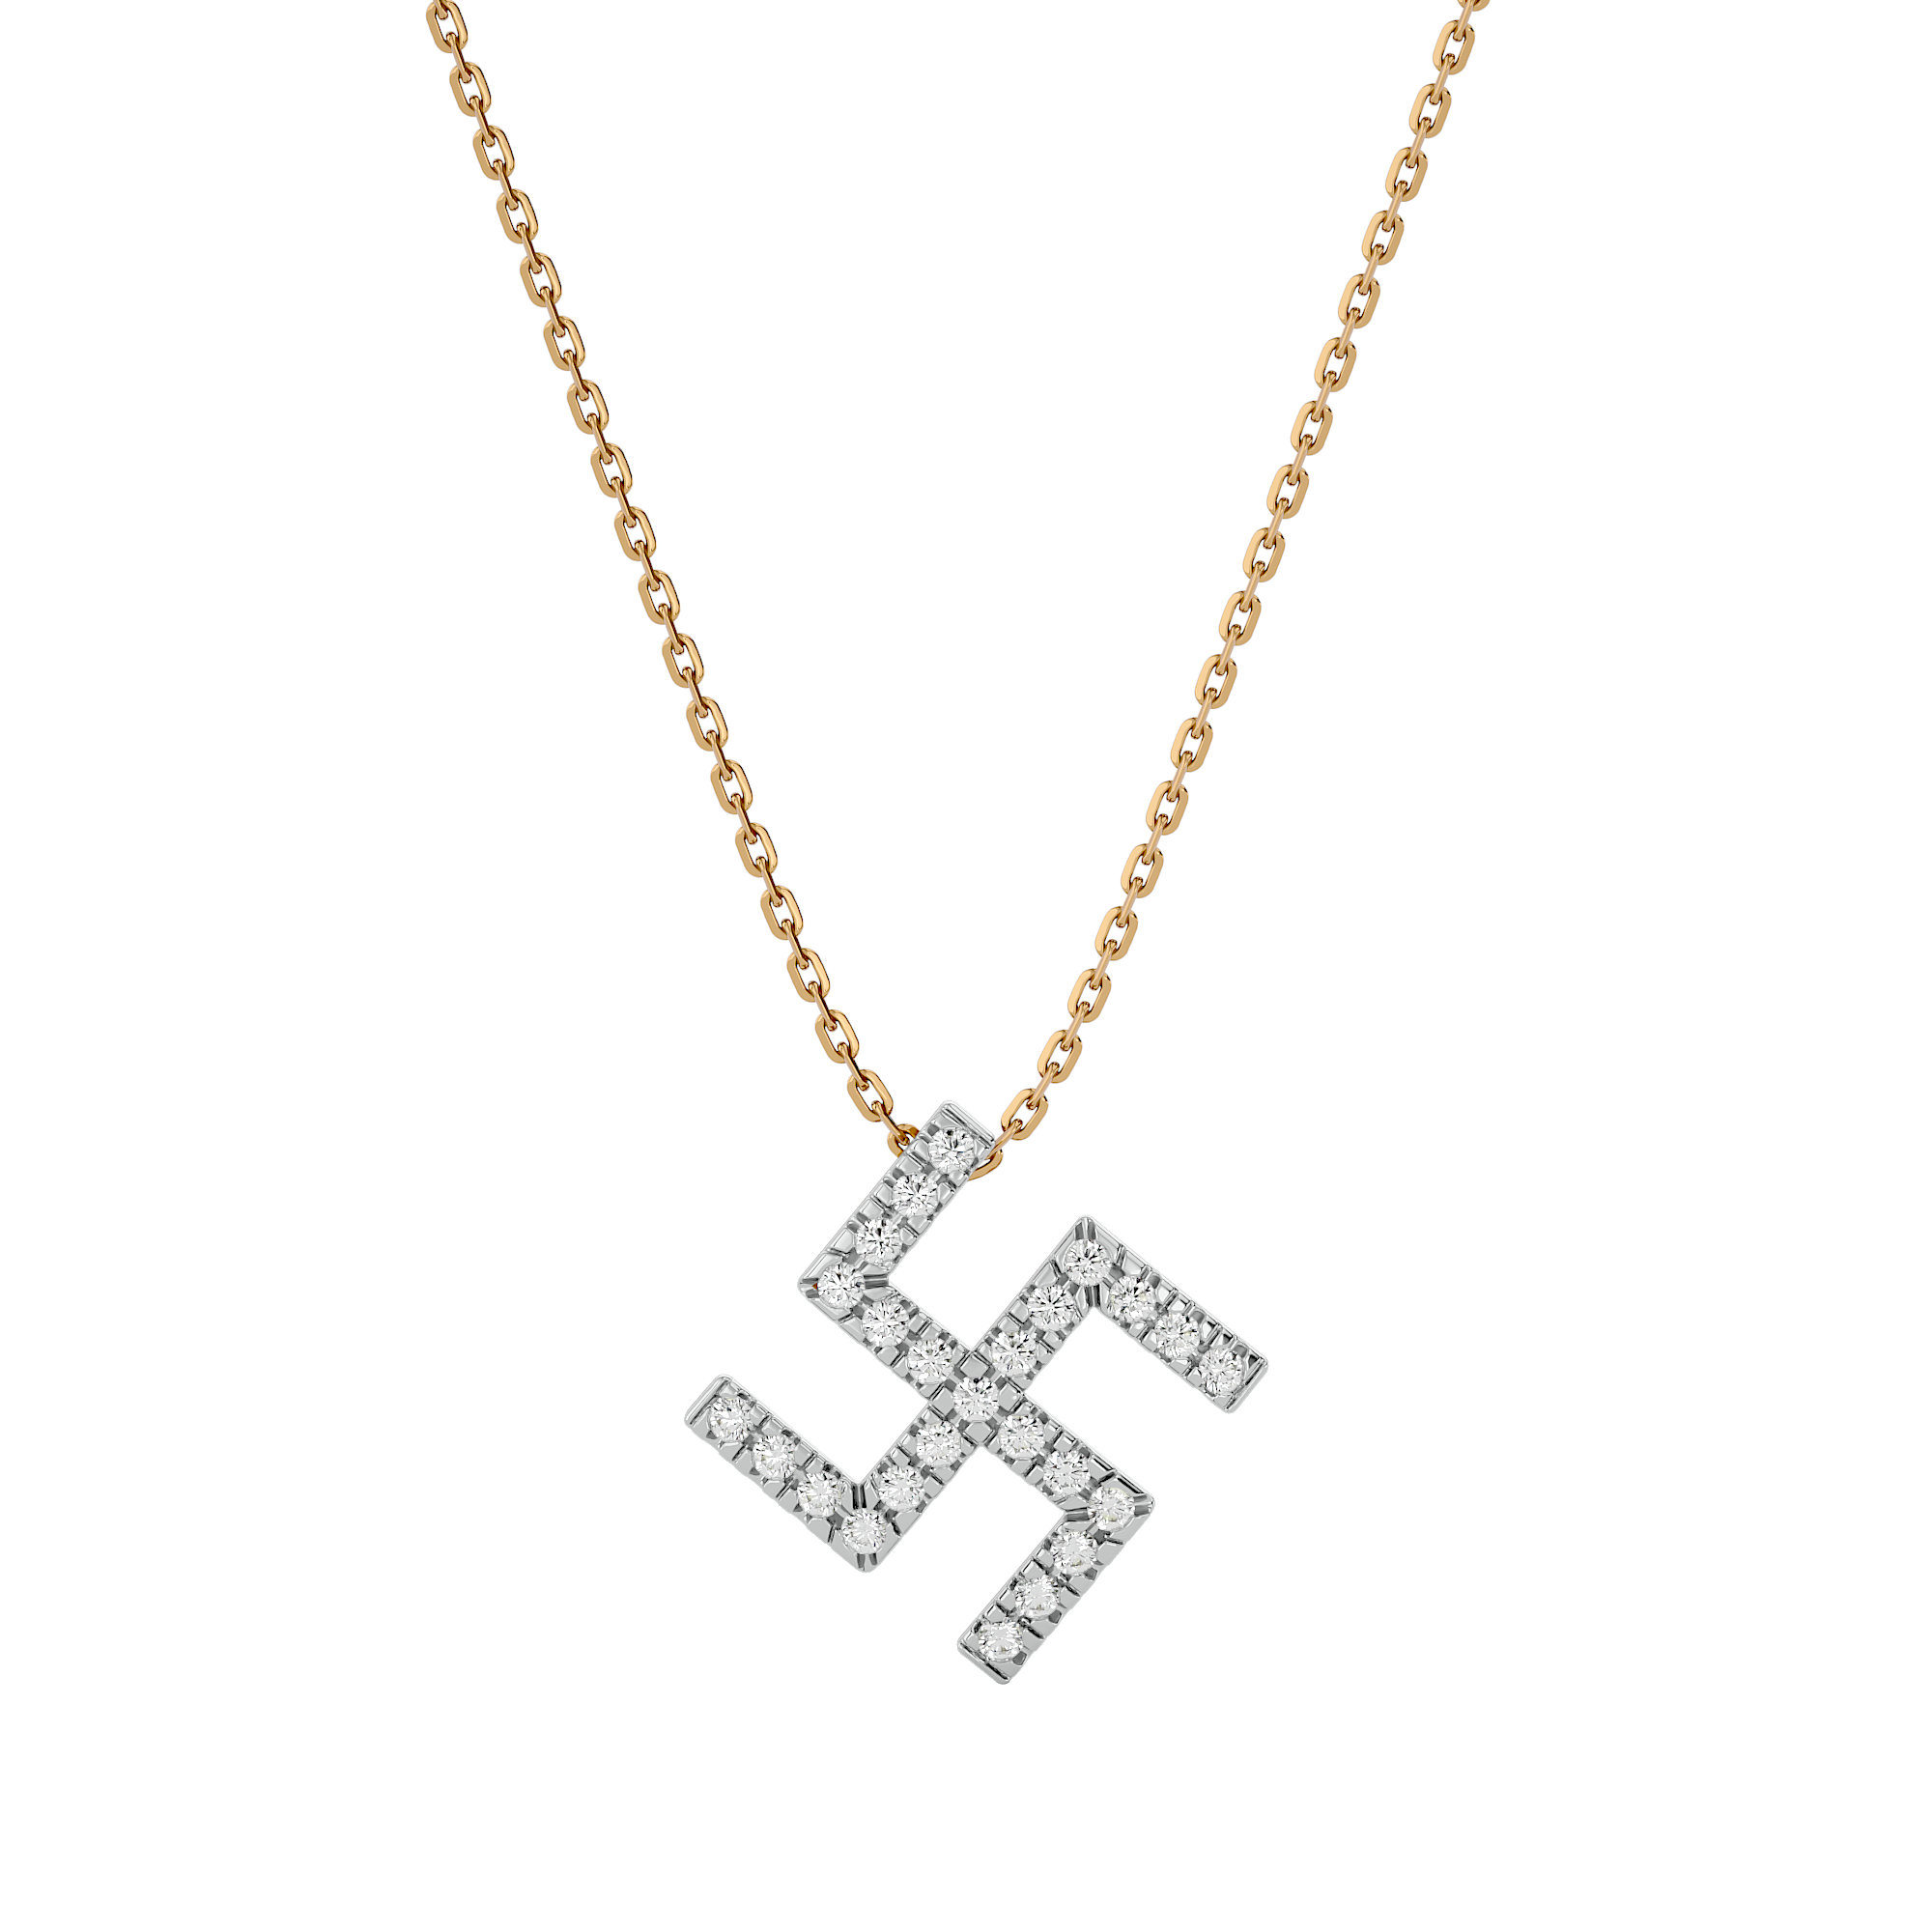 Swastik Lab Grown Diamond Pendant